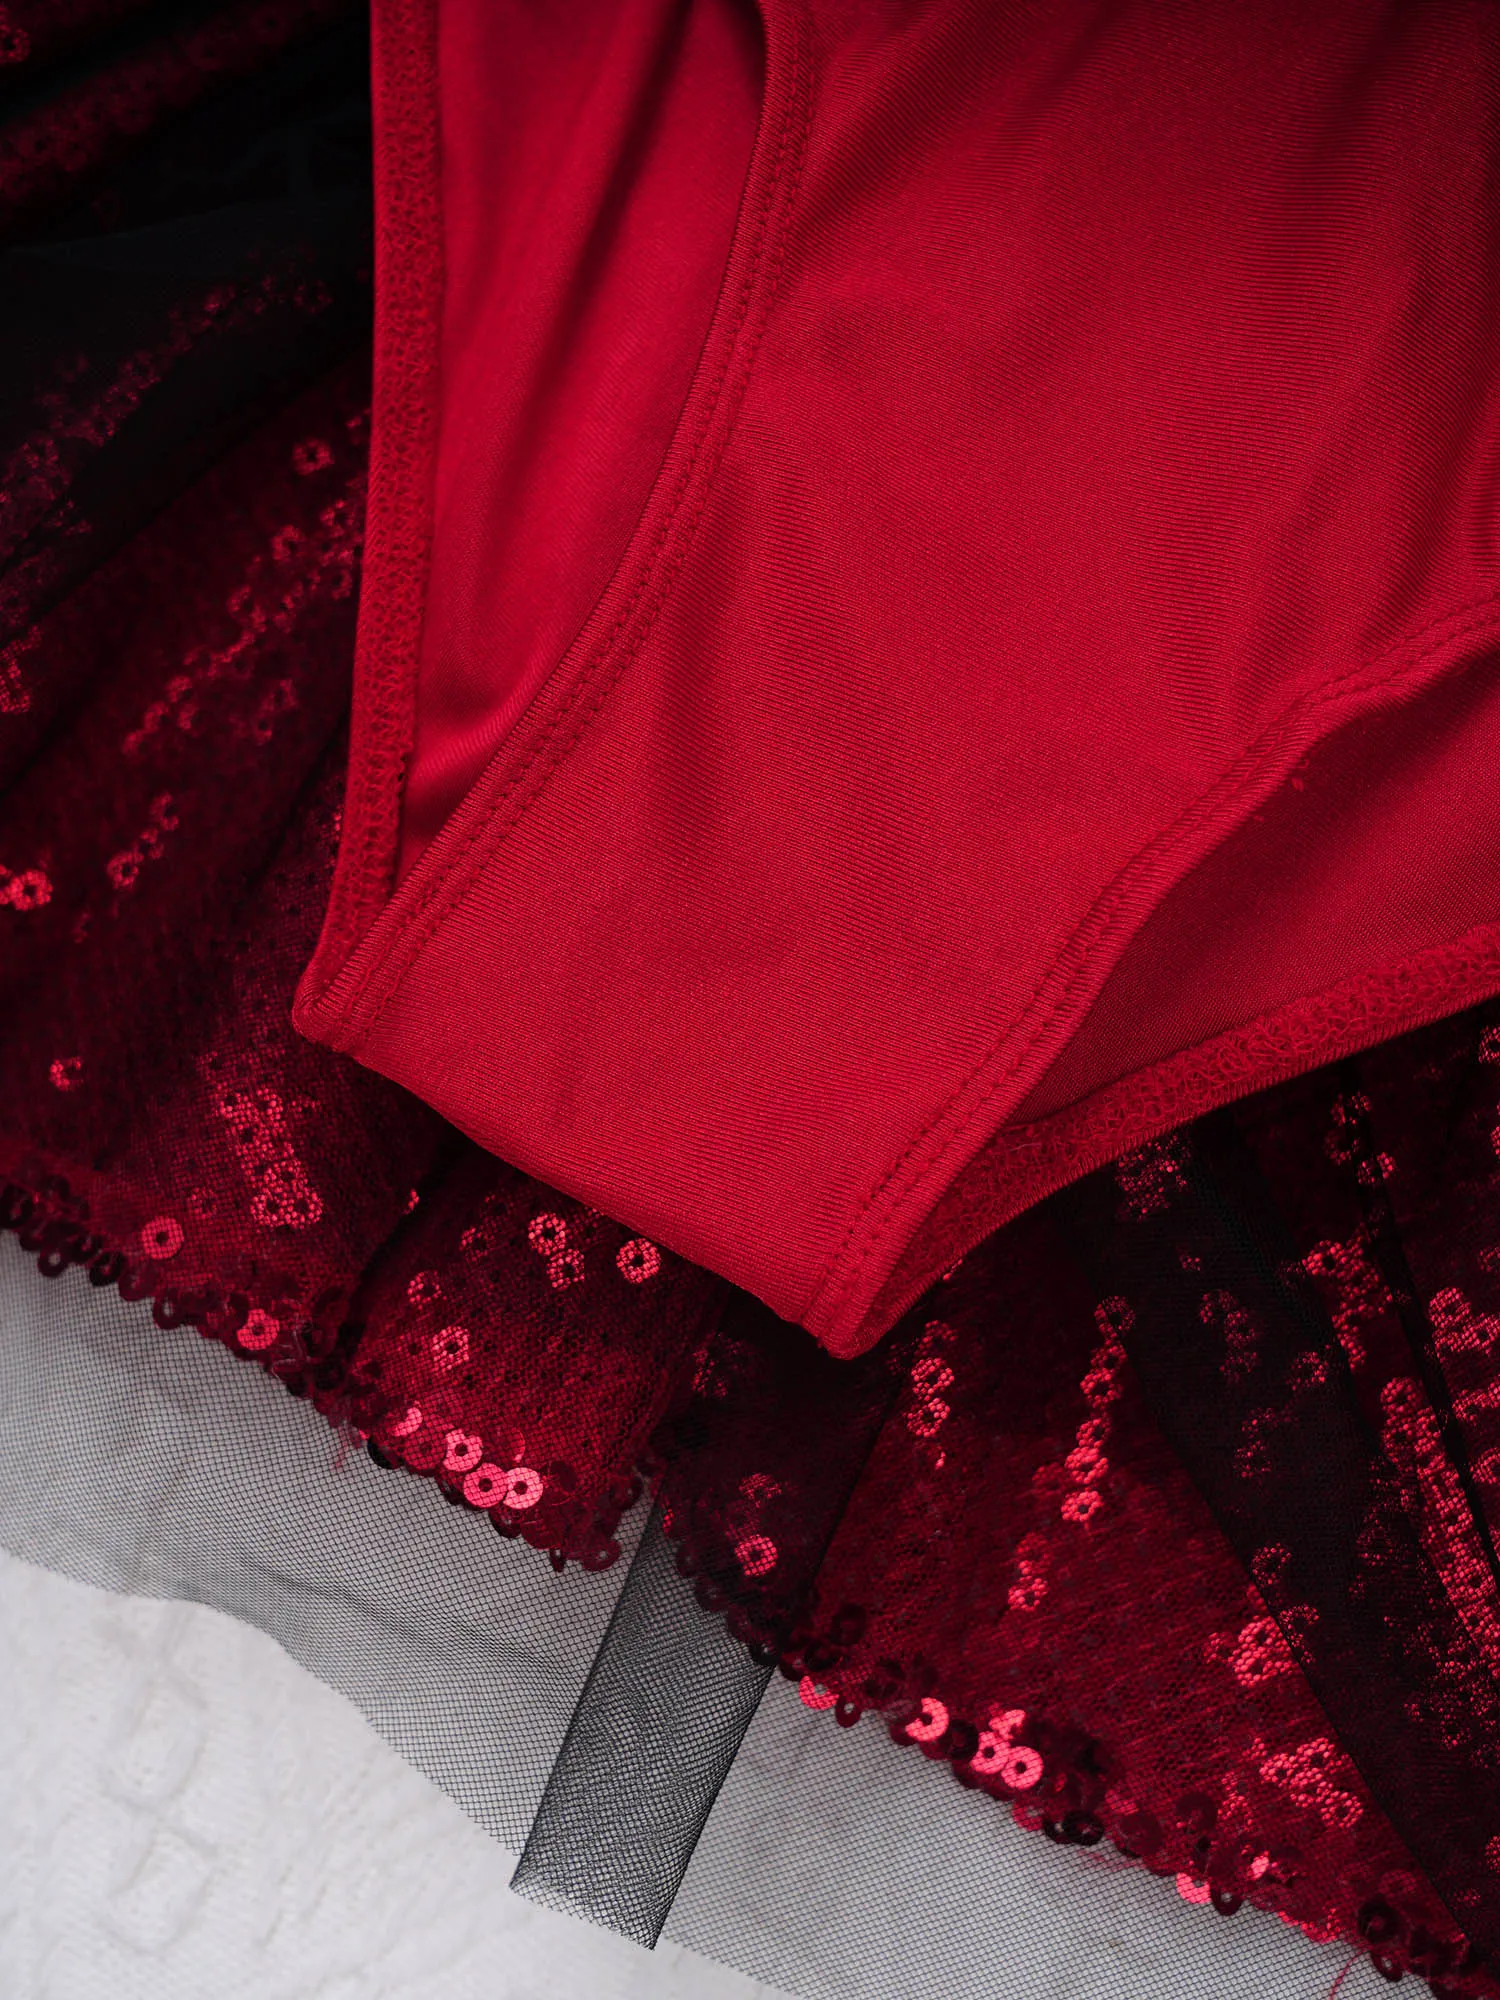 ילדים בנות נוצץ נצנצים ריקוד בלט השמלה האדומה Bowknot שרוולים חג המולד קרקס קרקס מפואר שמלה למעלה חצאית בגד גוף שמלה . ' - ' . 3